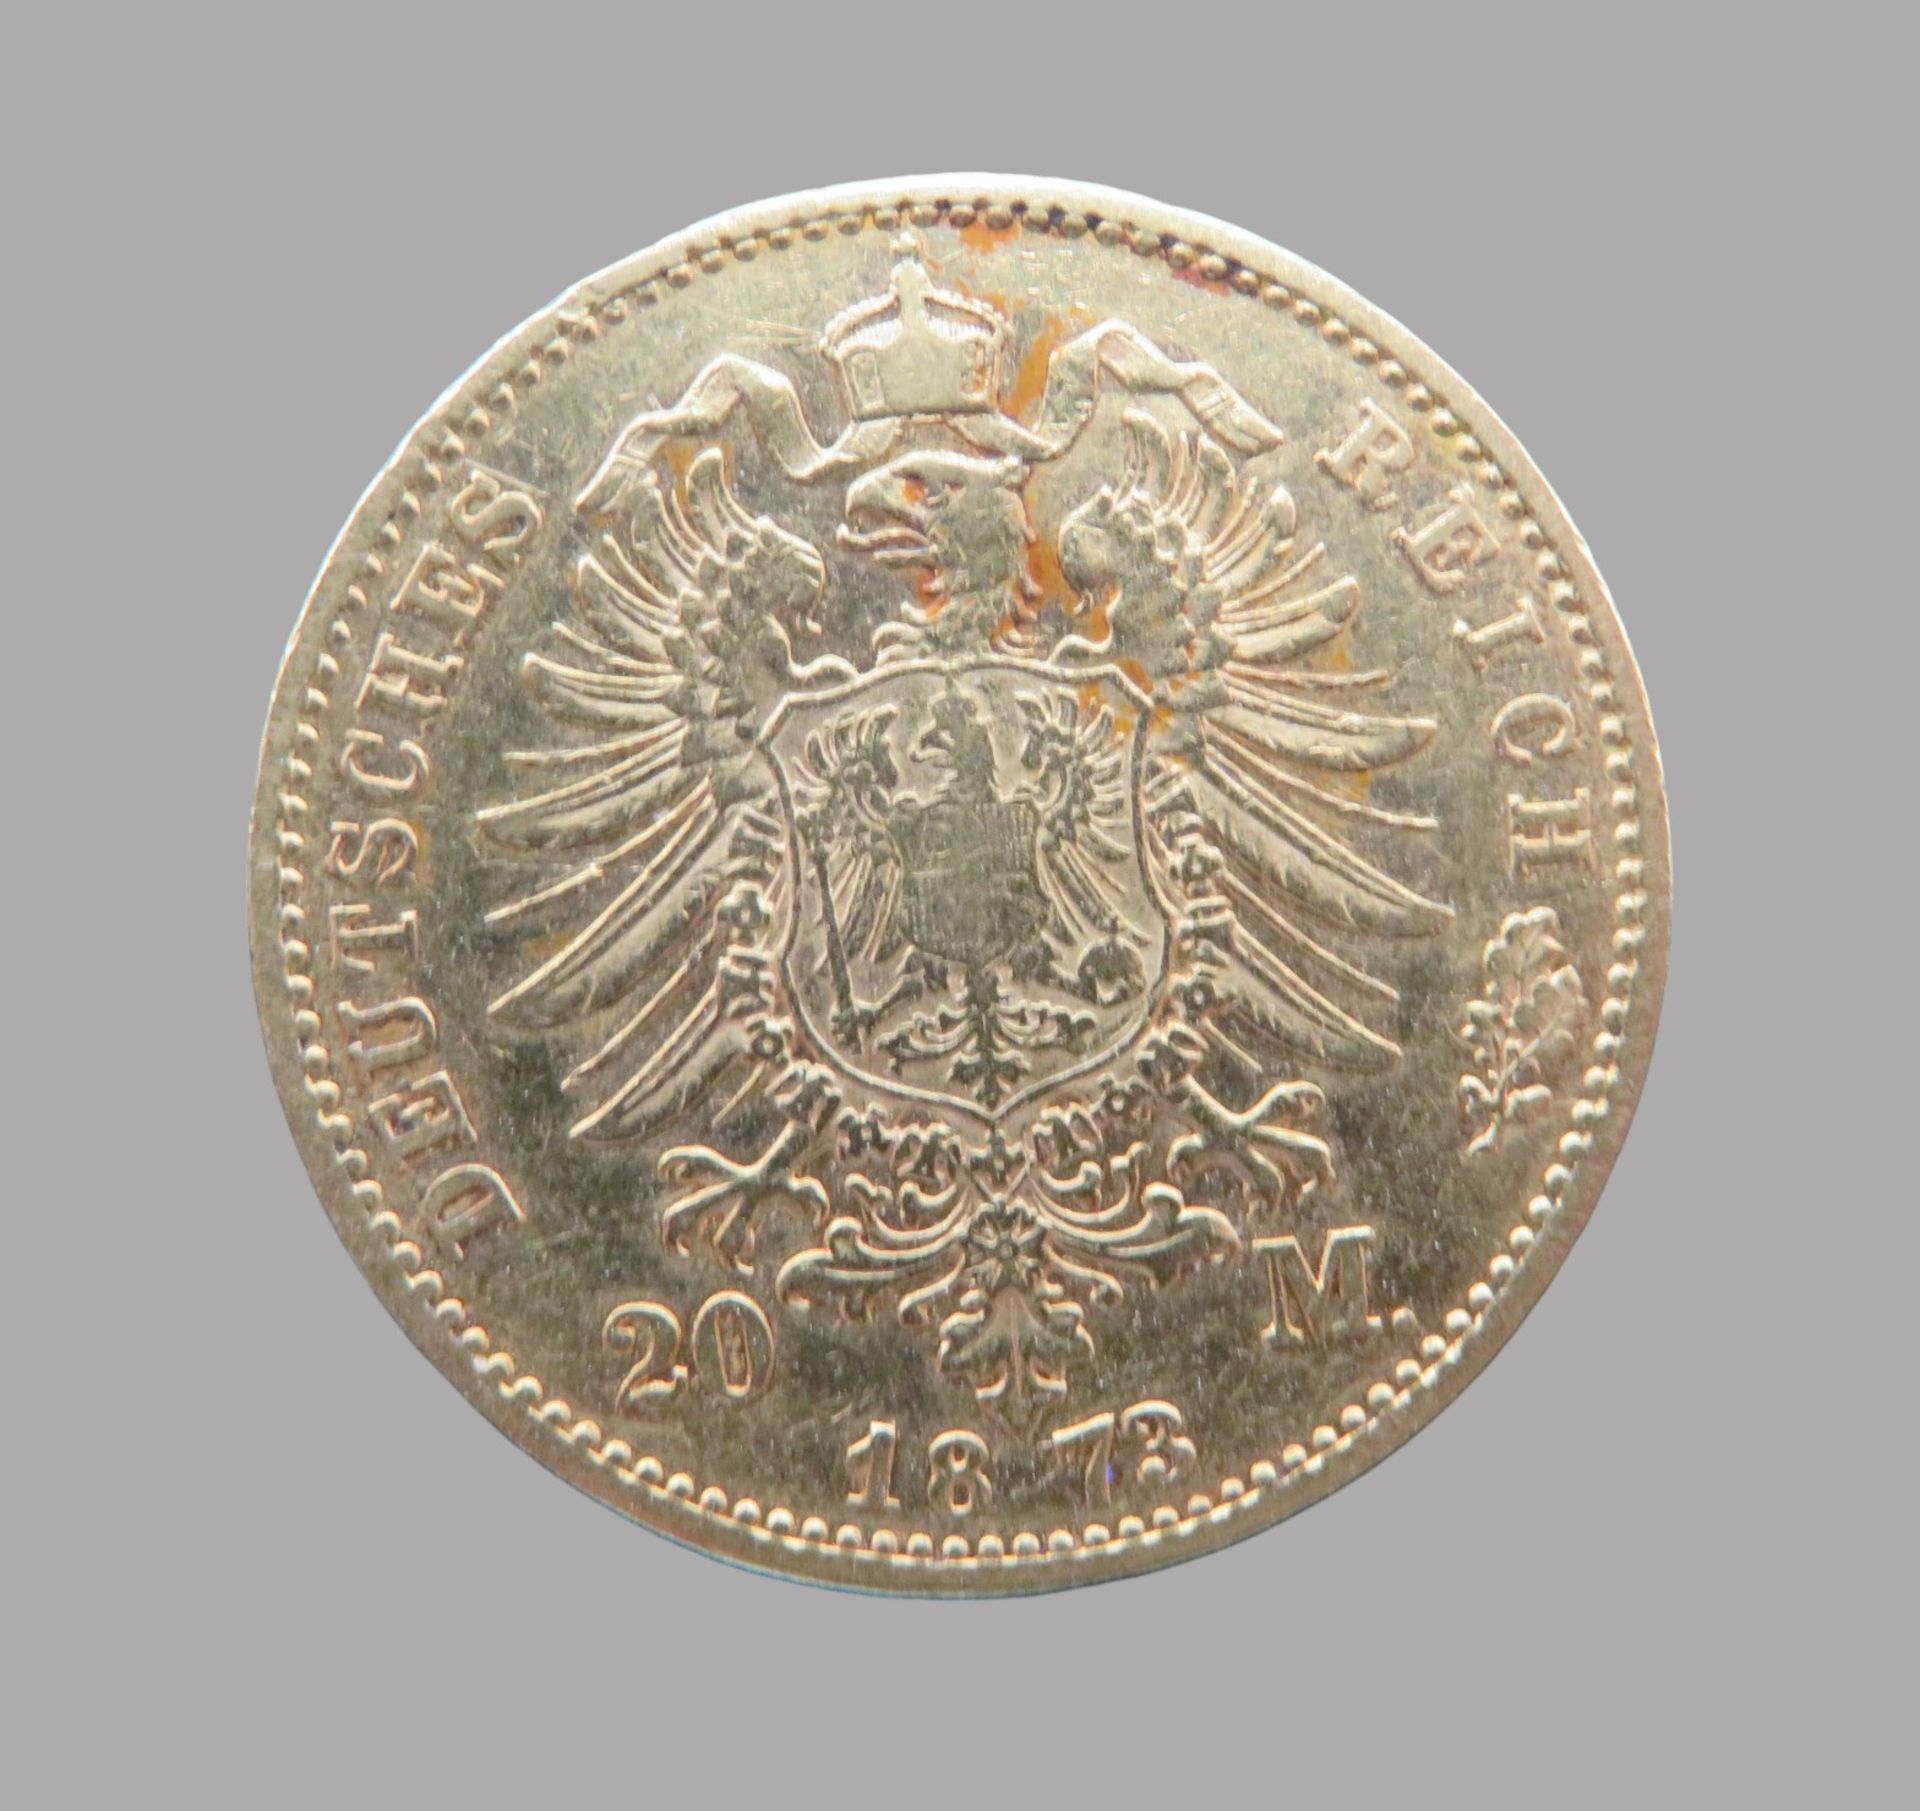 Goldmünze, Ludwig II. von Bayern, 20 Mark, 1873D, Gold 900/000, 7,16 g, d 2,3 cm. - Bild 2 aus 2